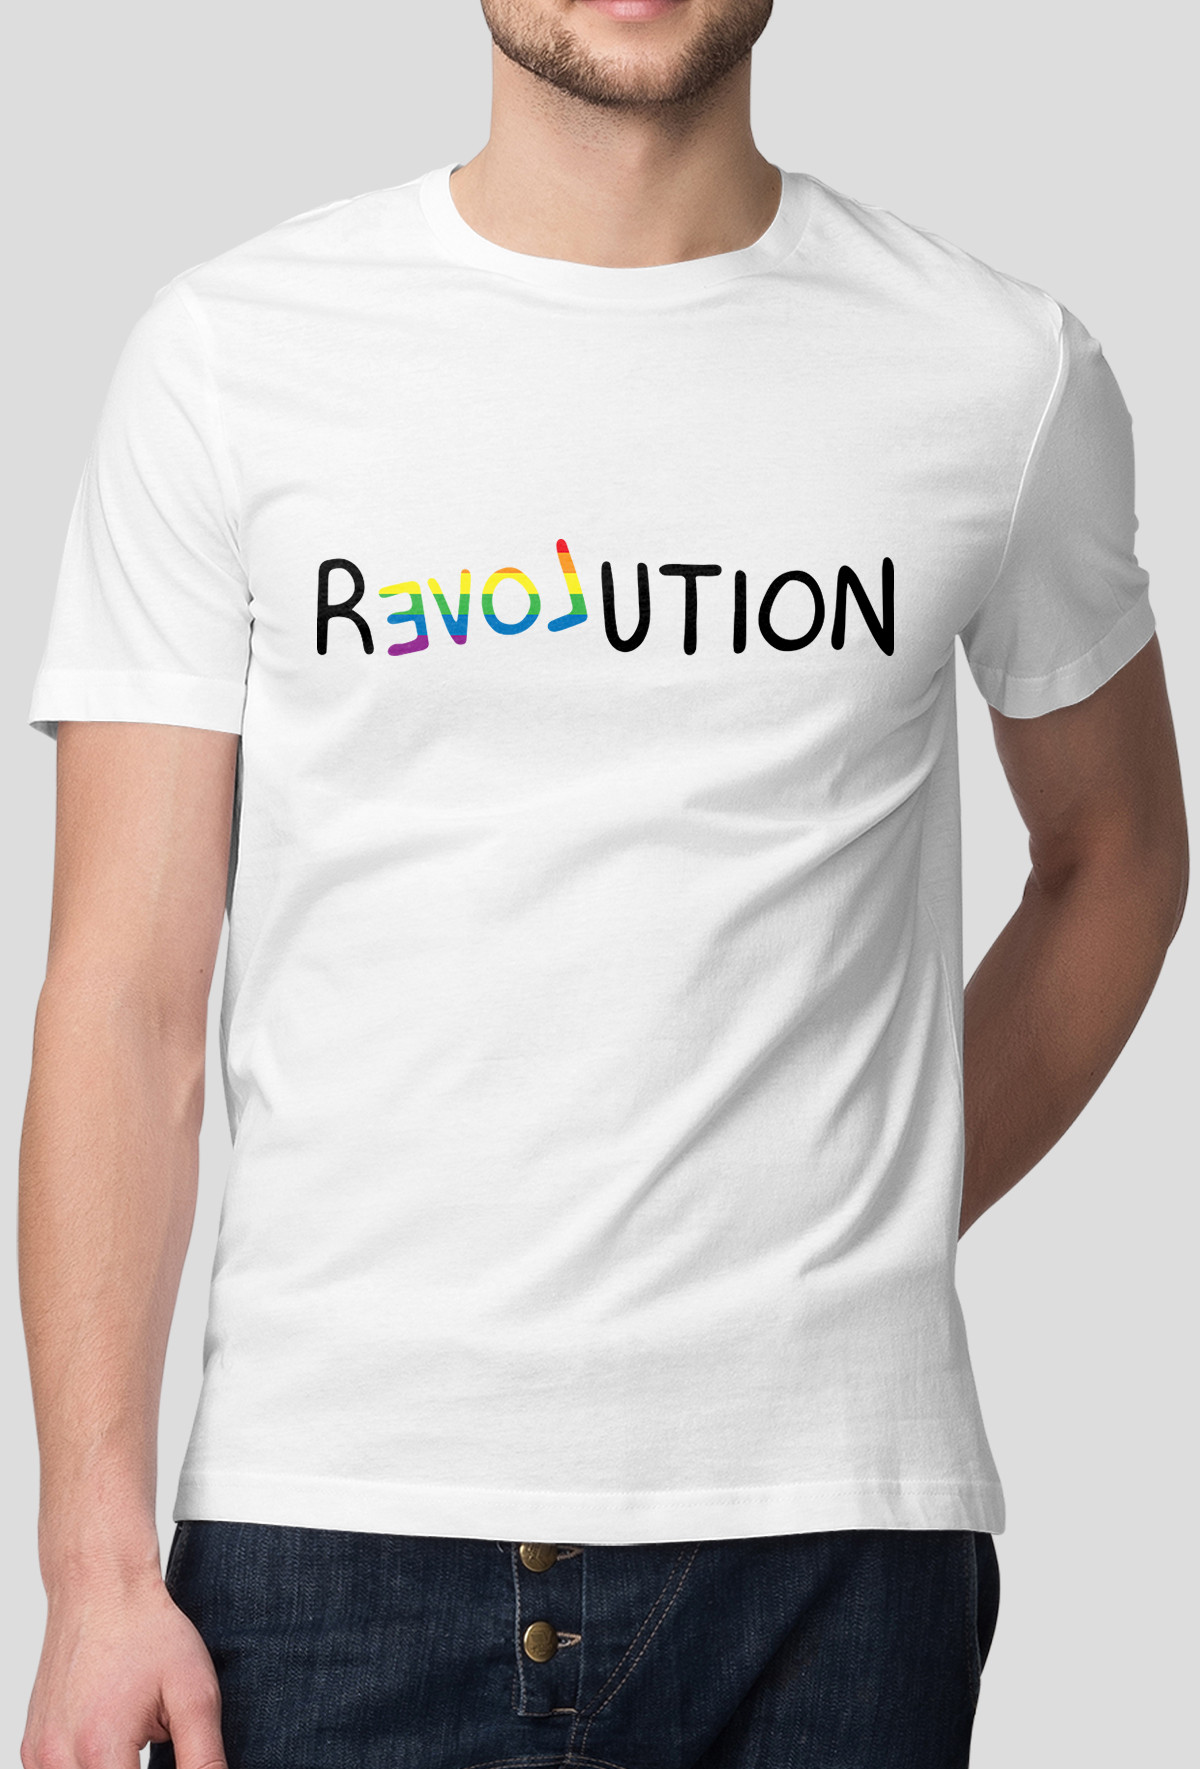 Koszulka -Revolution (Oryginalny Prezent)